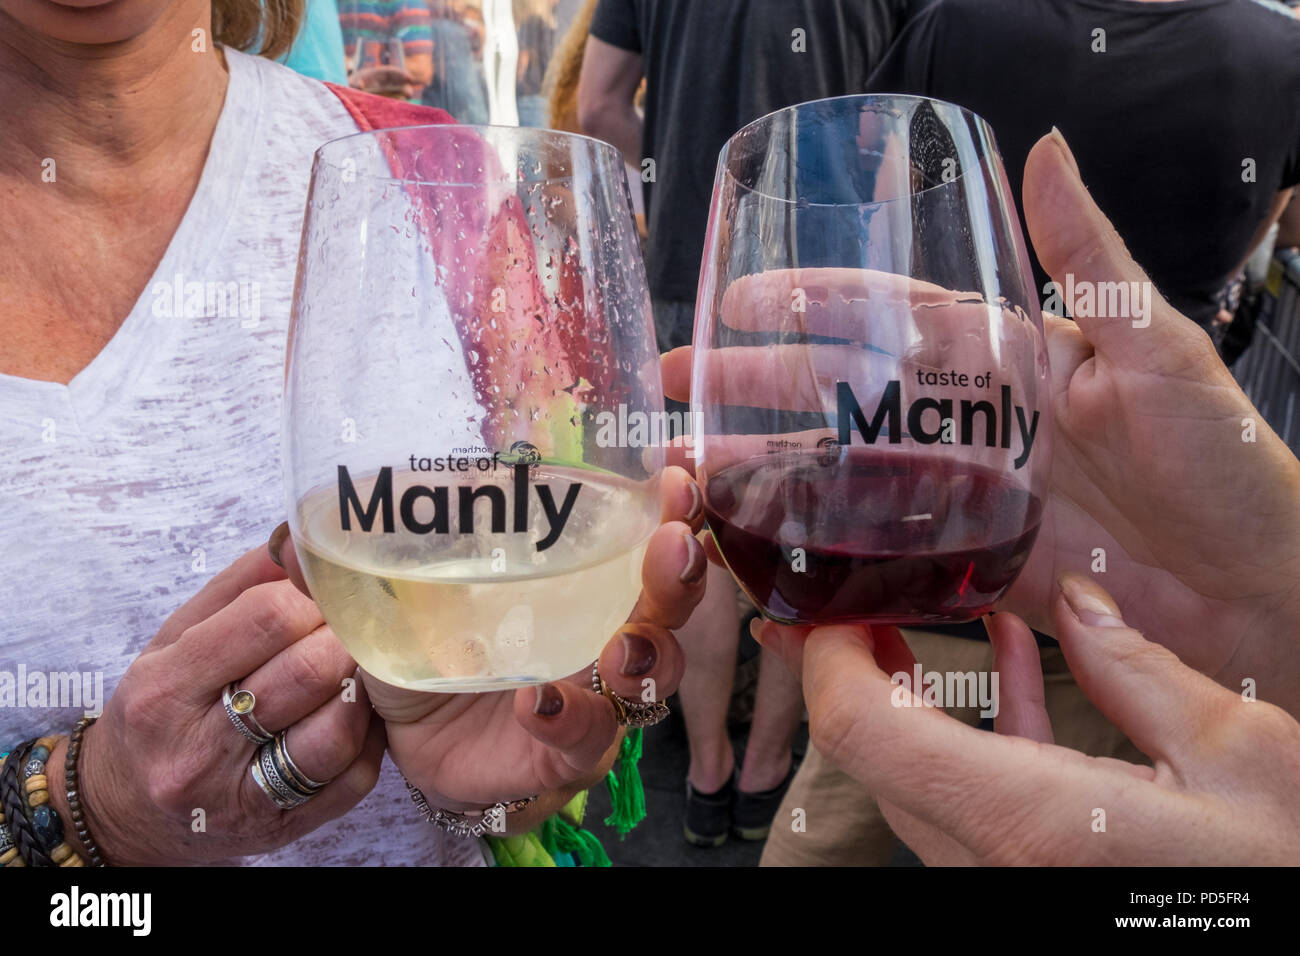 La nourriture, vin et Manly et durabilité Festival (goût de Manly), Plages du Nord, Sydney, NSW, Australie Banque D'Images